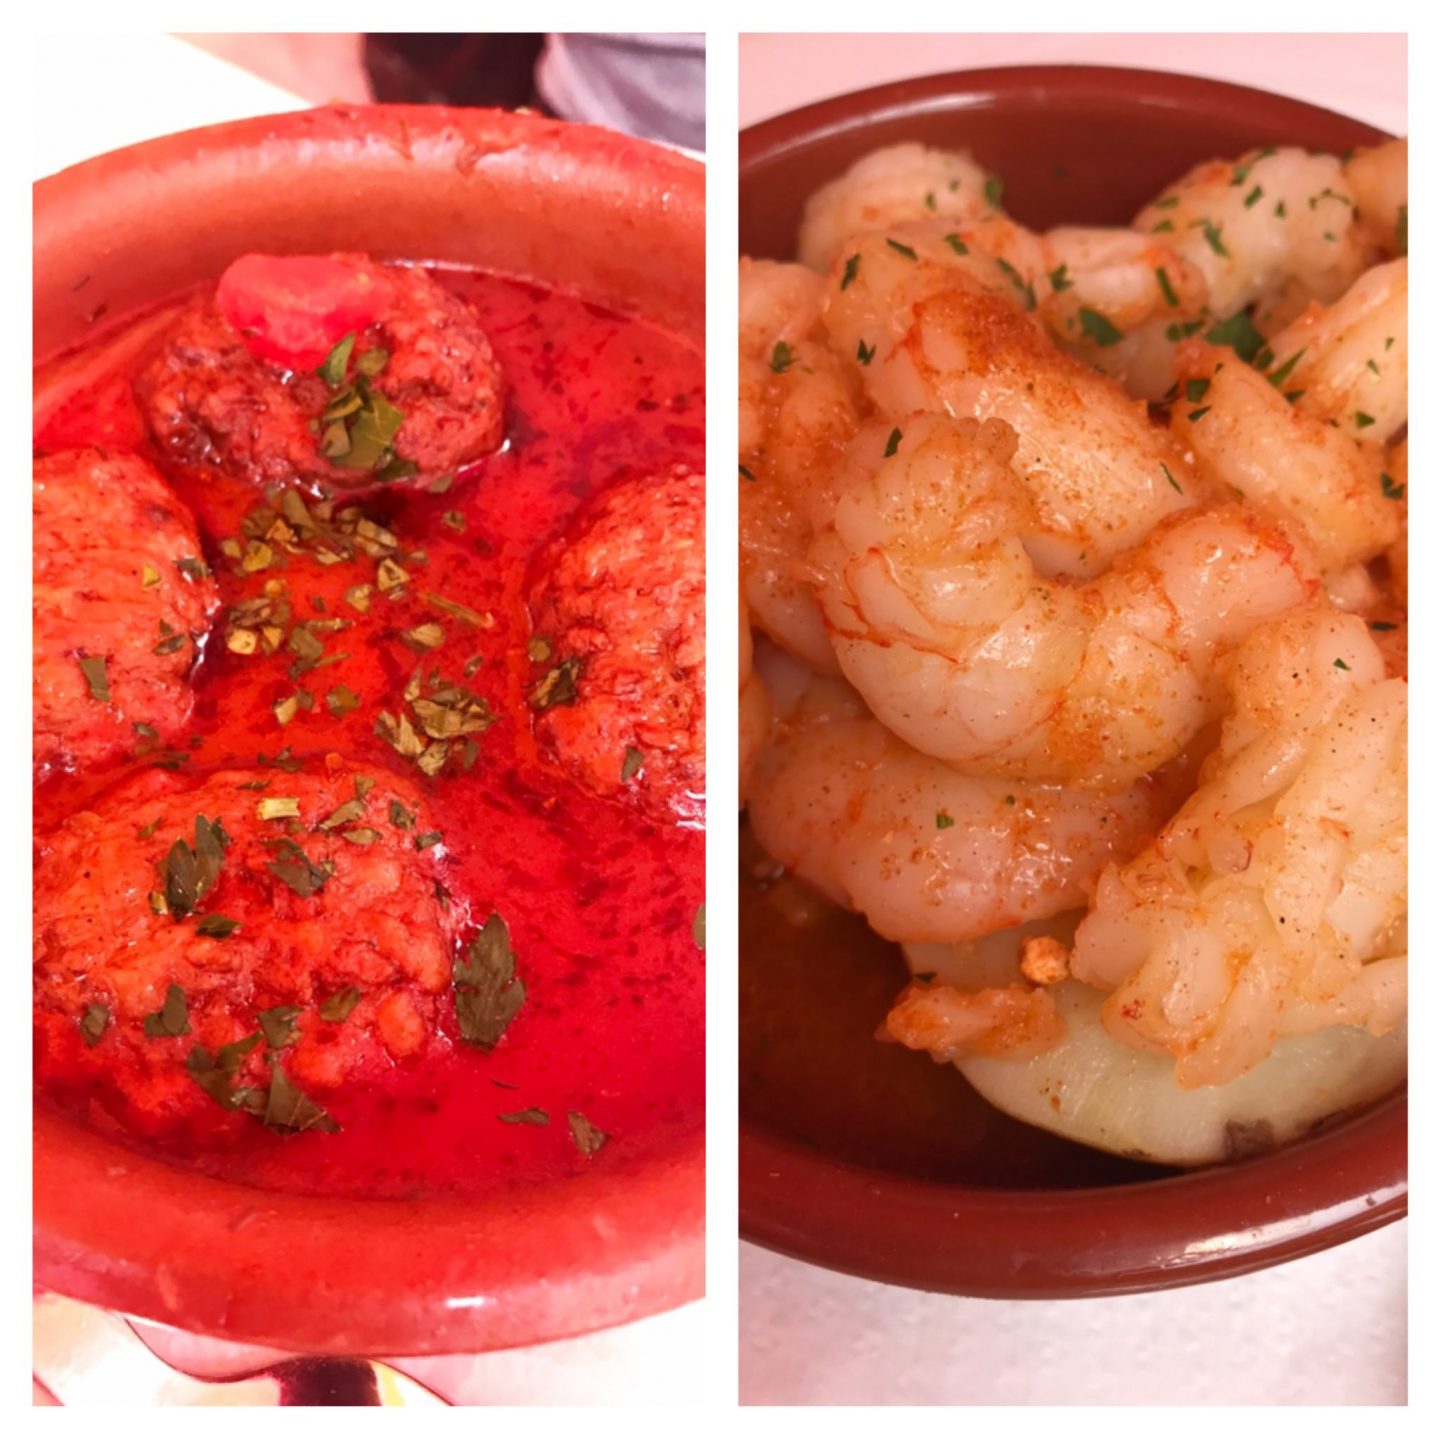 Erfahrung Kritik Bewertung Tapas Bar Coto Palma de Mallorca Foodblog Sternestulle 